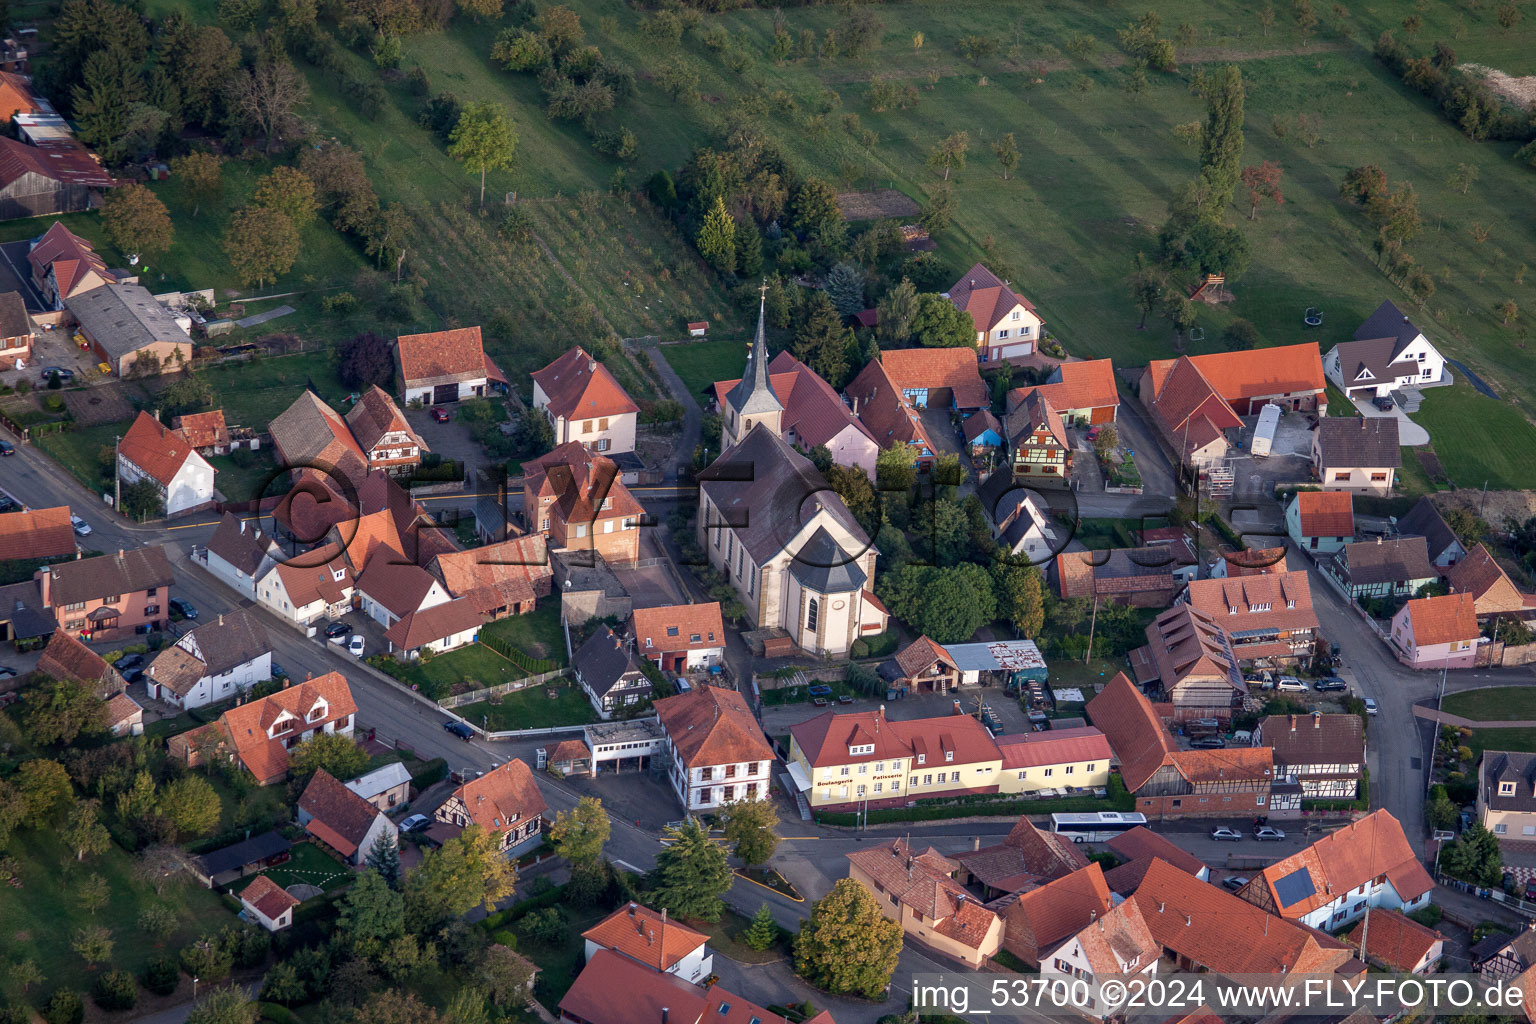 Champs agricoles et surfaces utilisables à Gunstett dans le département Bas Rhin, France d'en haut